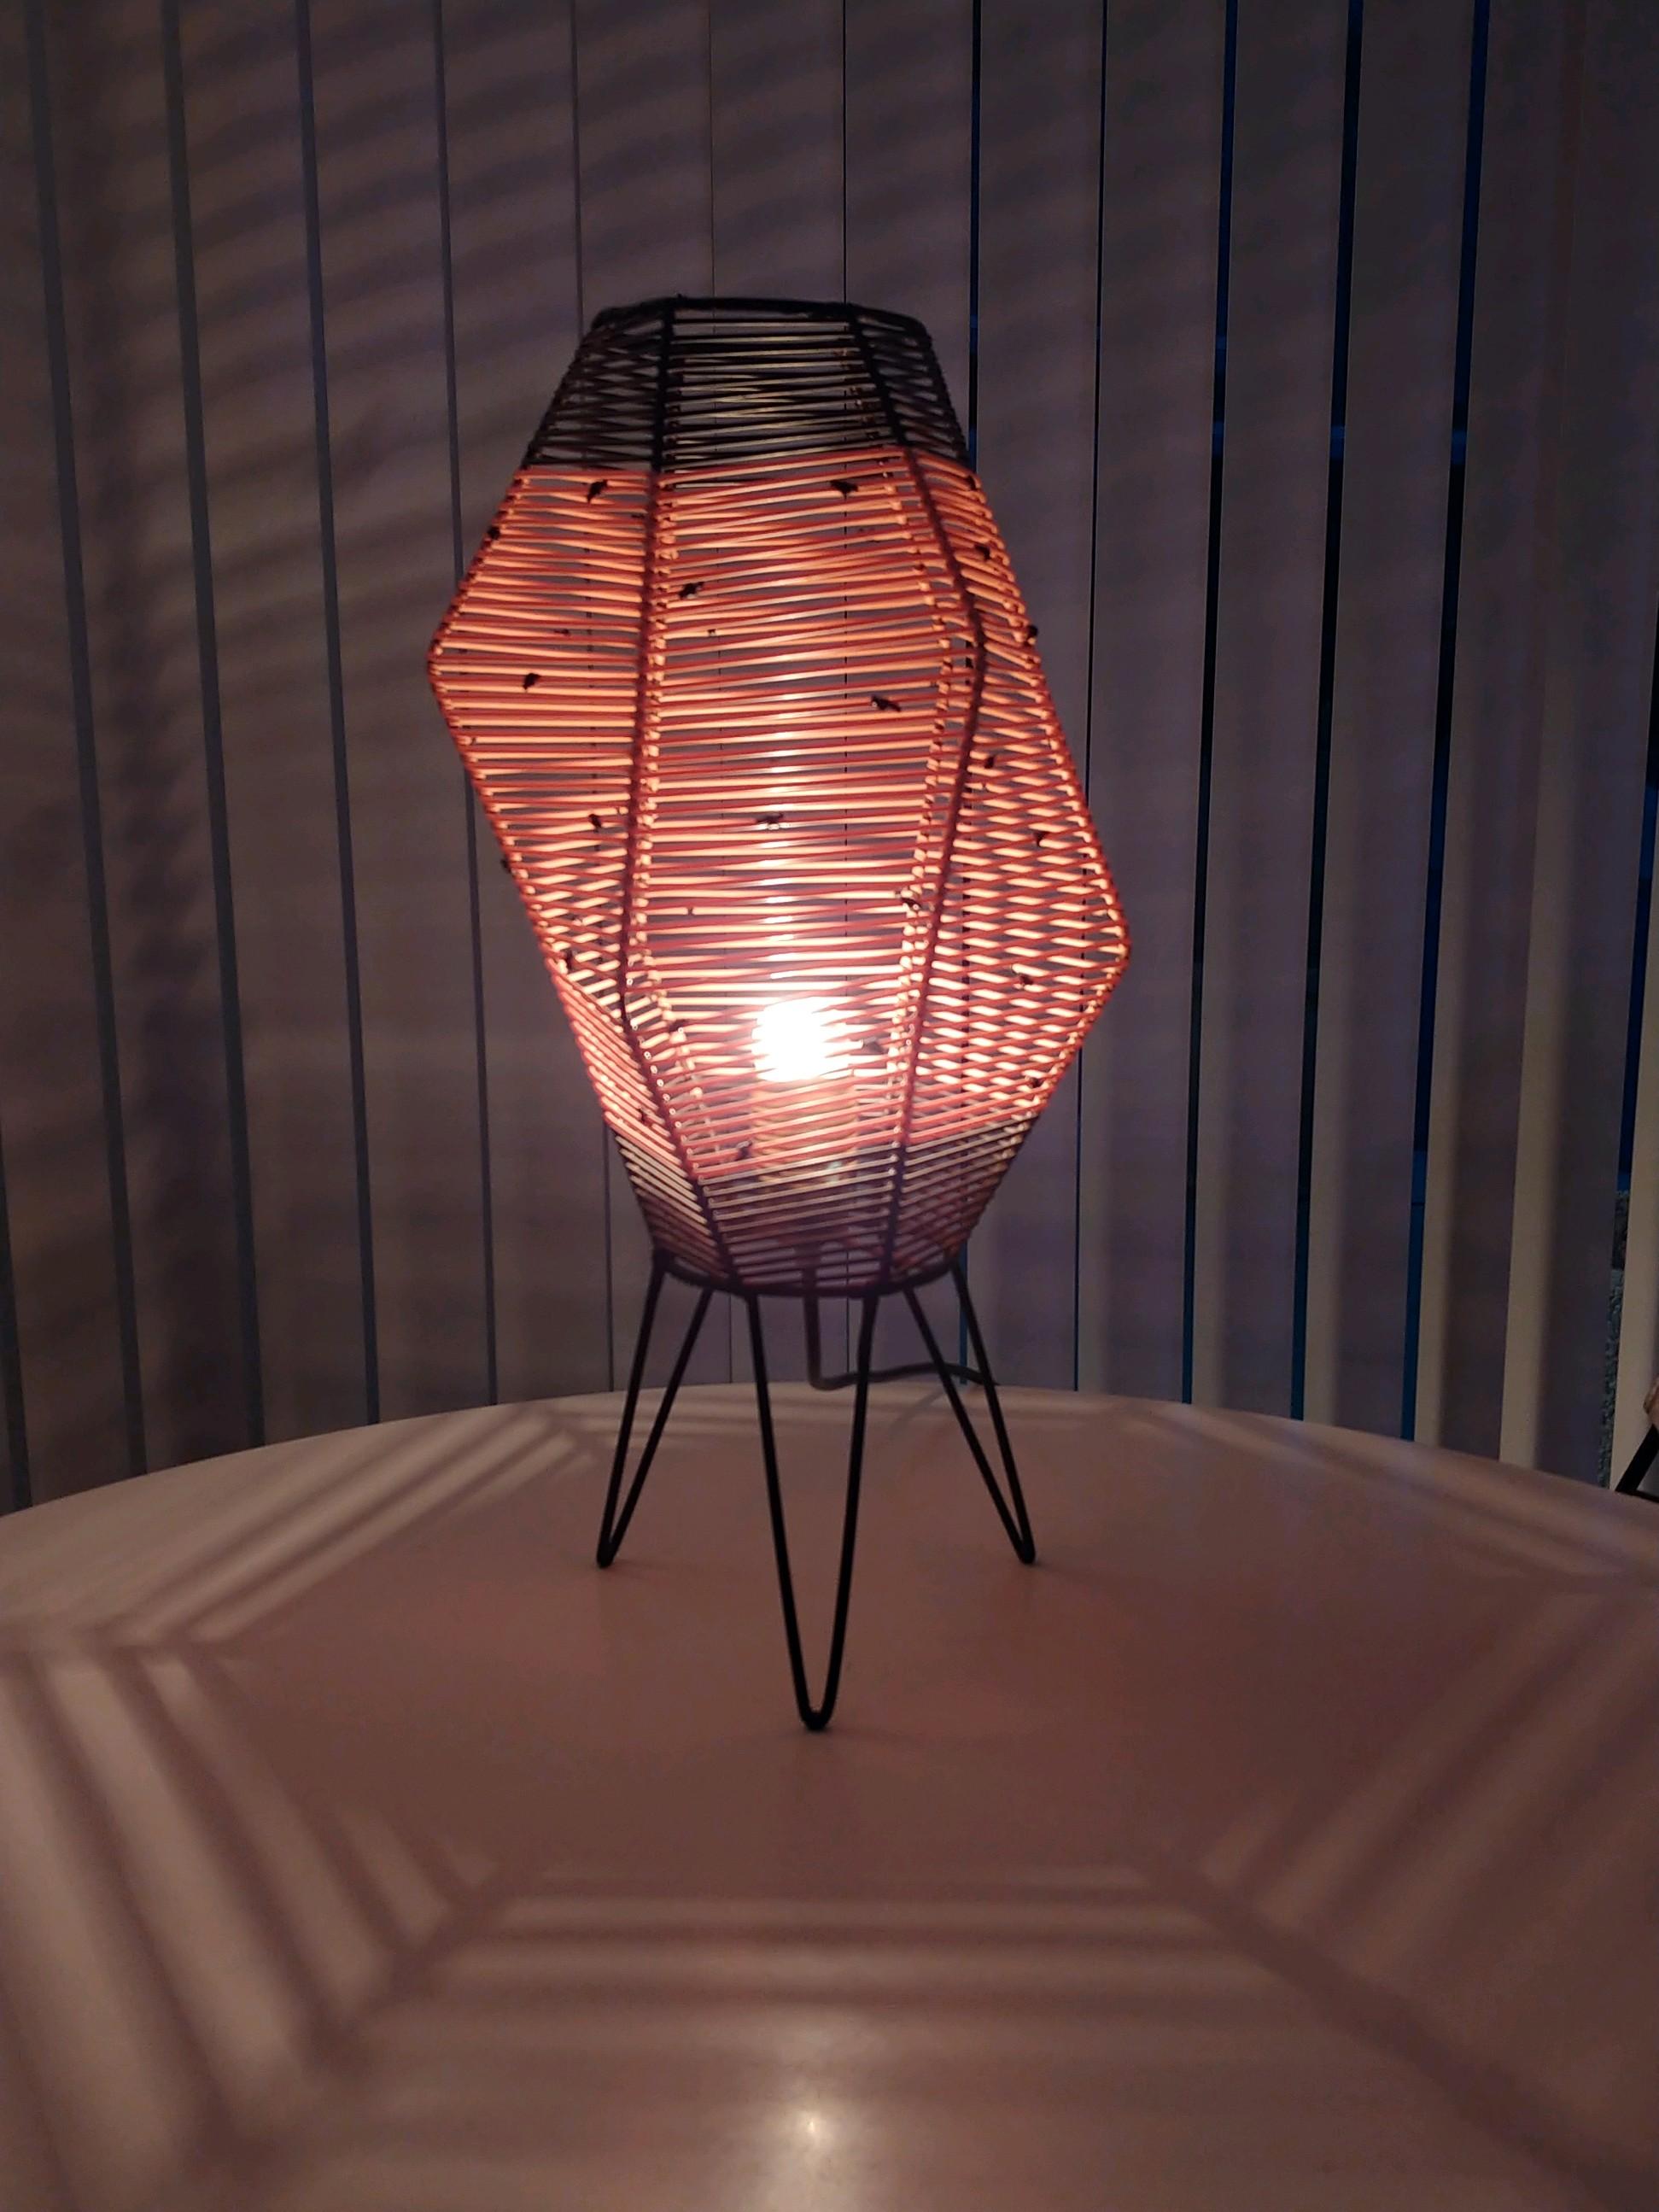 Cette lampe asymétrique en fil de fer avec des pieds en épingle à cheveux est enroulée avec un cordon en nylon rose et noir. Utilisée avec une ampoule claire, la lumière crée des motifs sur la table et sur les murs. Le cordon en nylon est à 100%